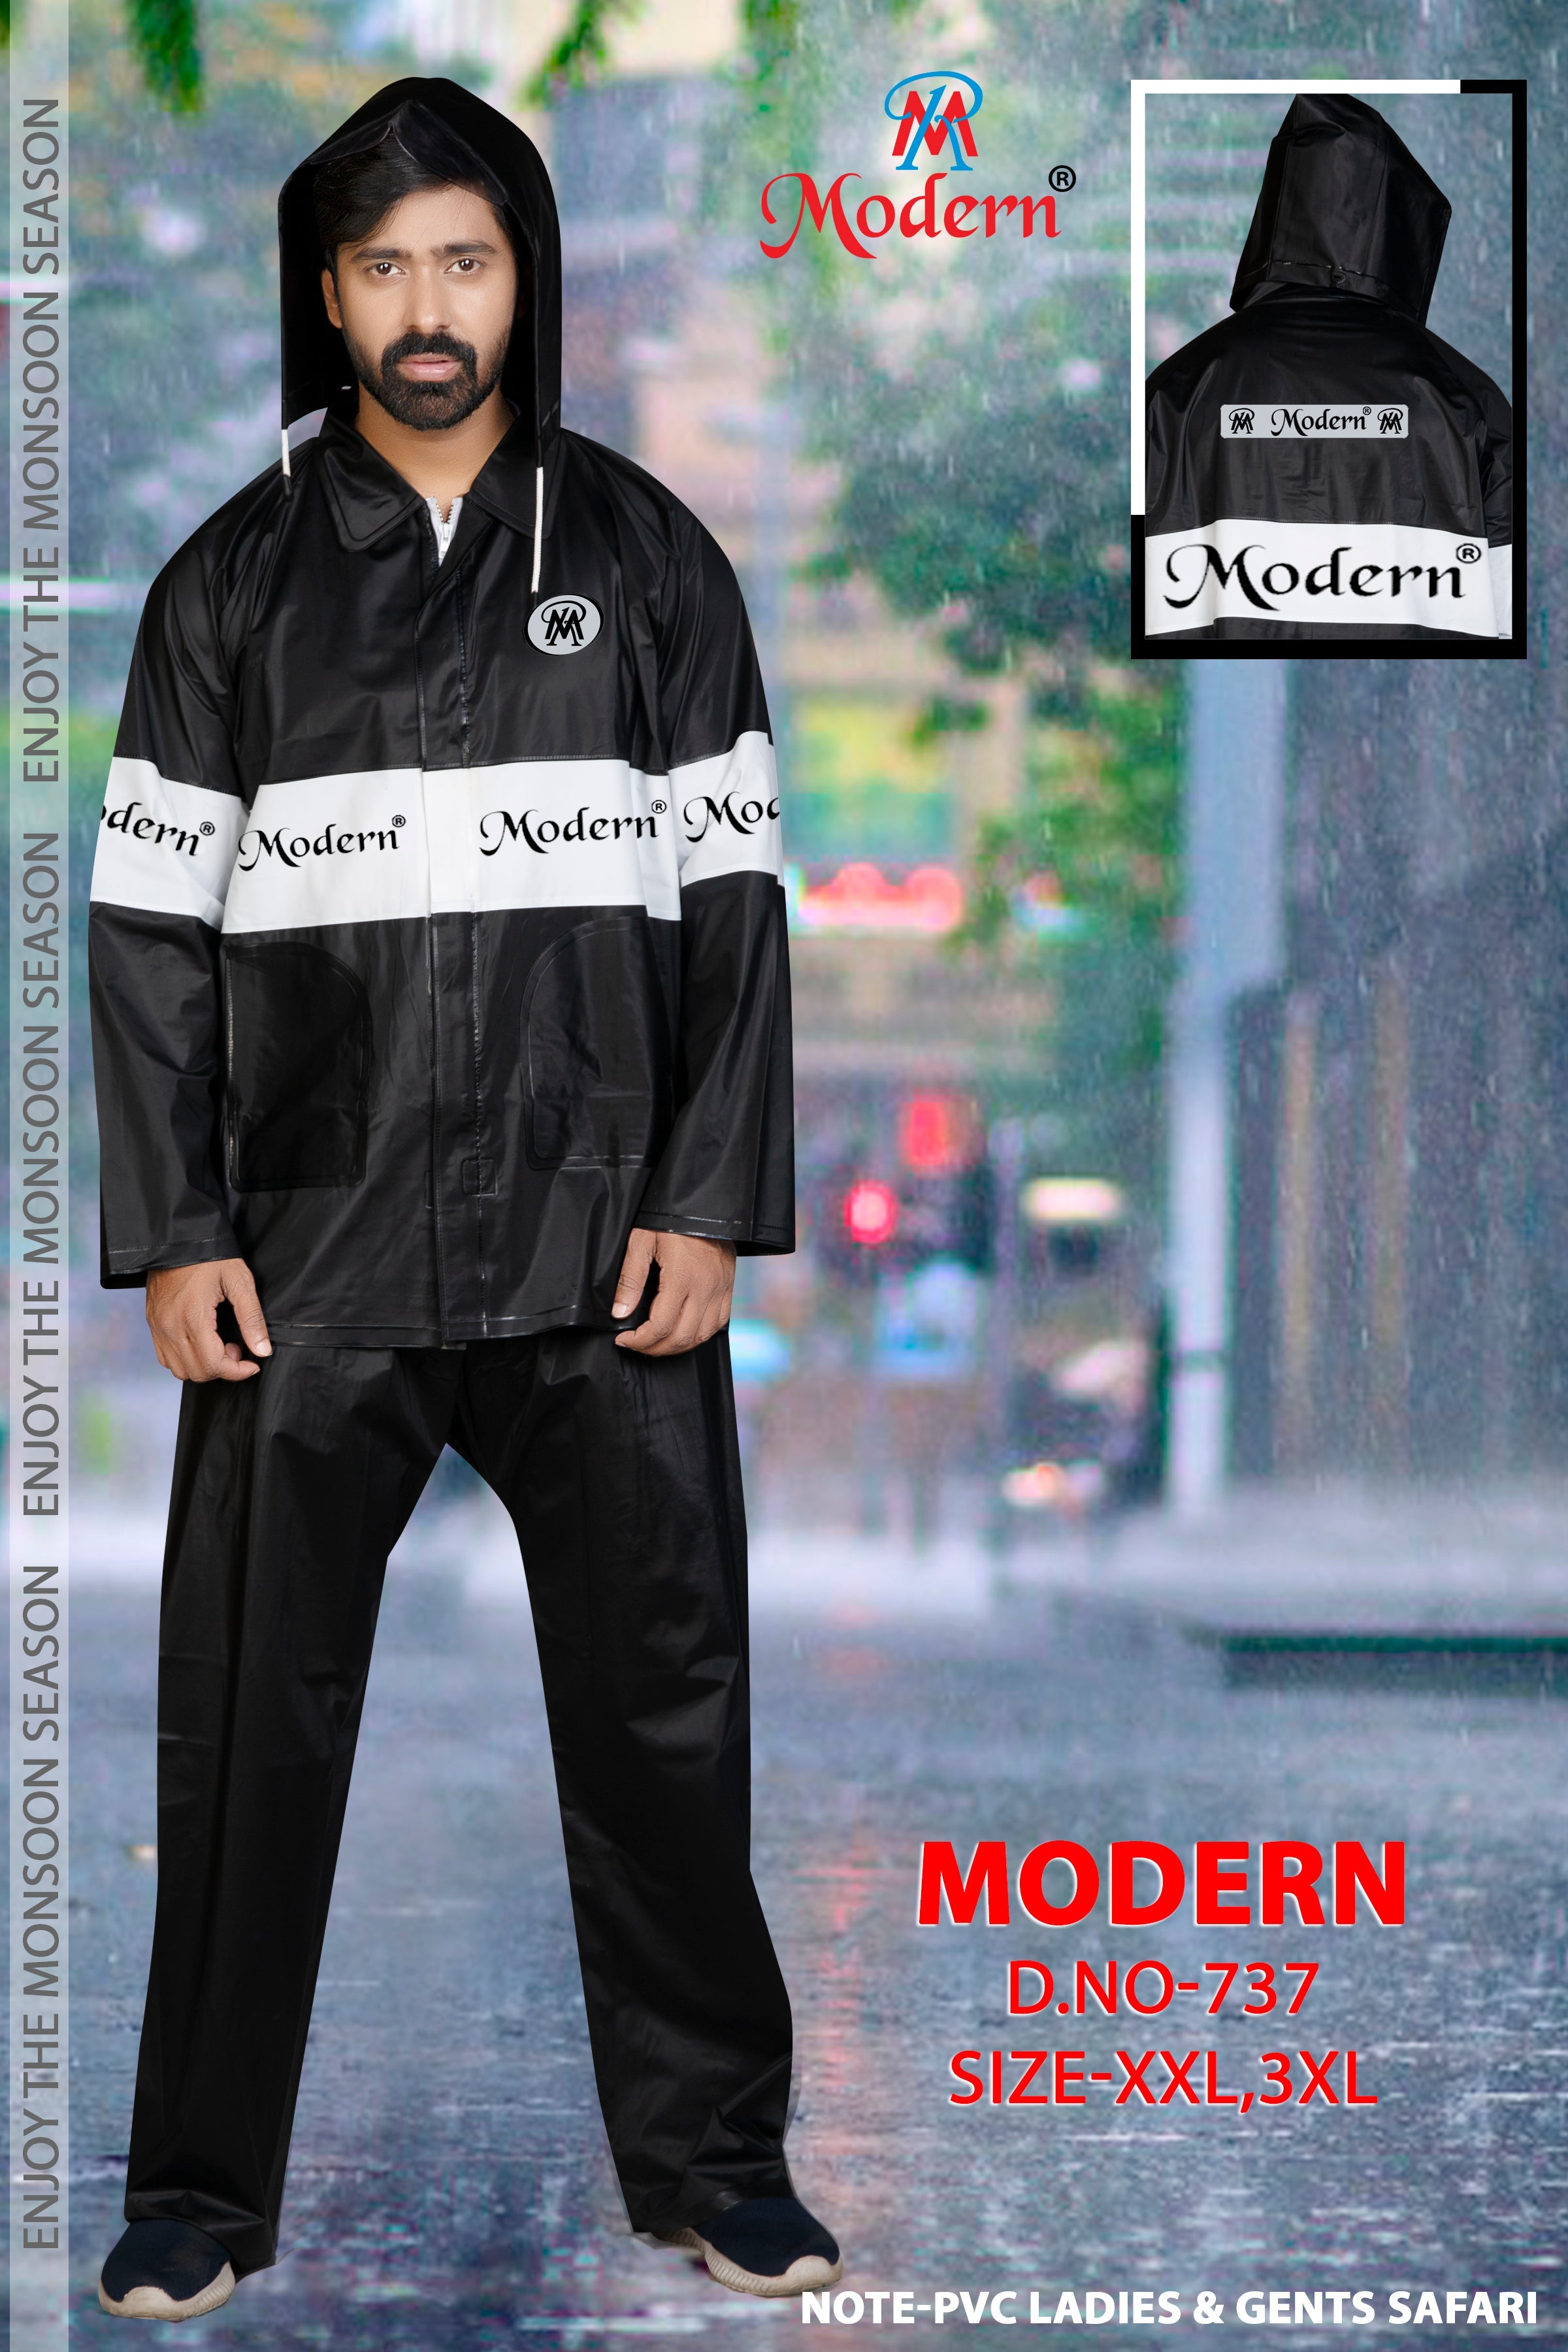 Rain Jackets - Buy Rain Jackets for Men Online at Adventuras